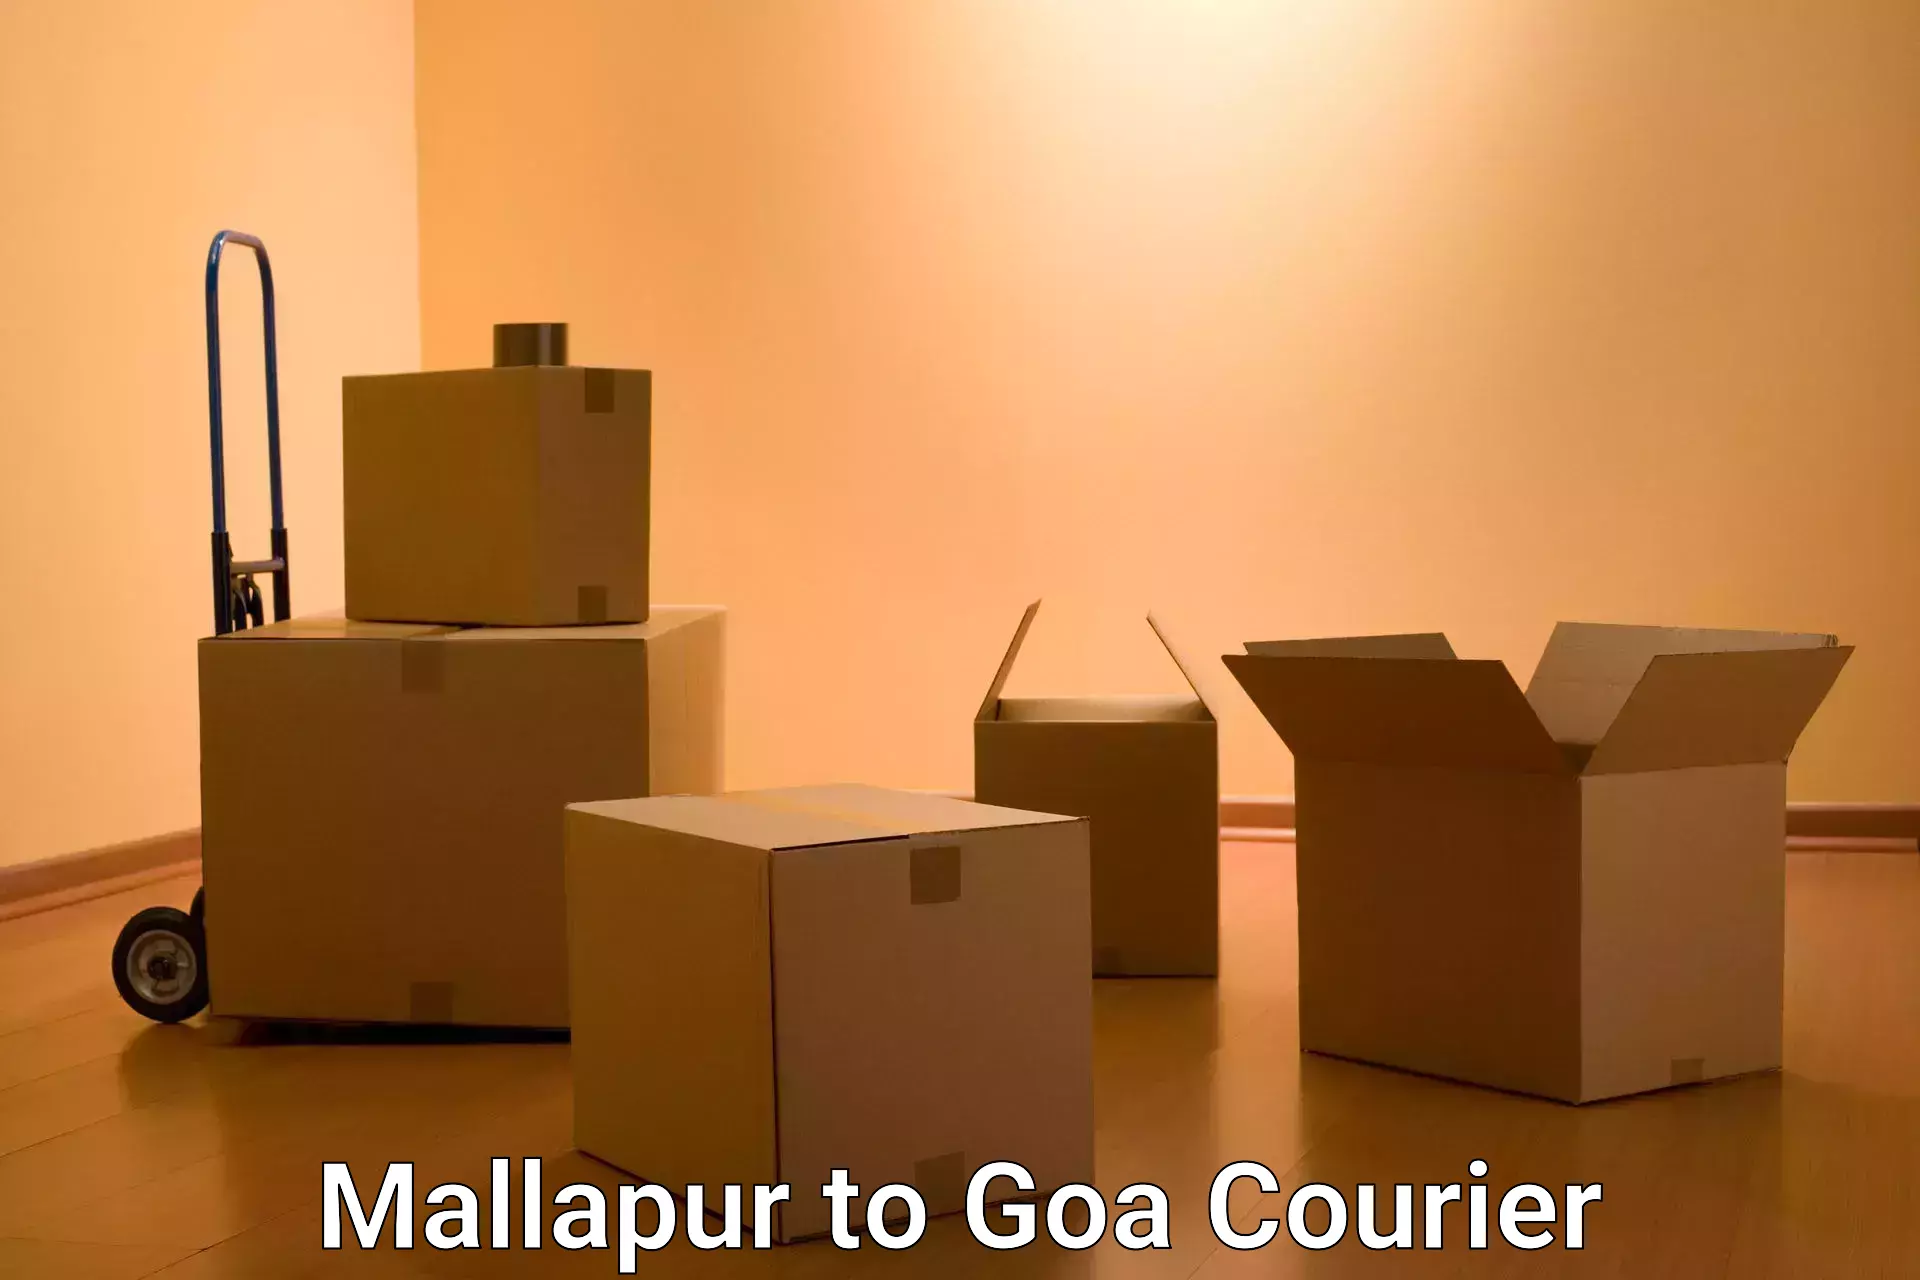 Reliable courier service Mallapur to Vasco da Gama